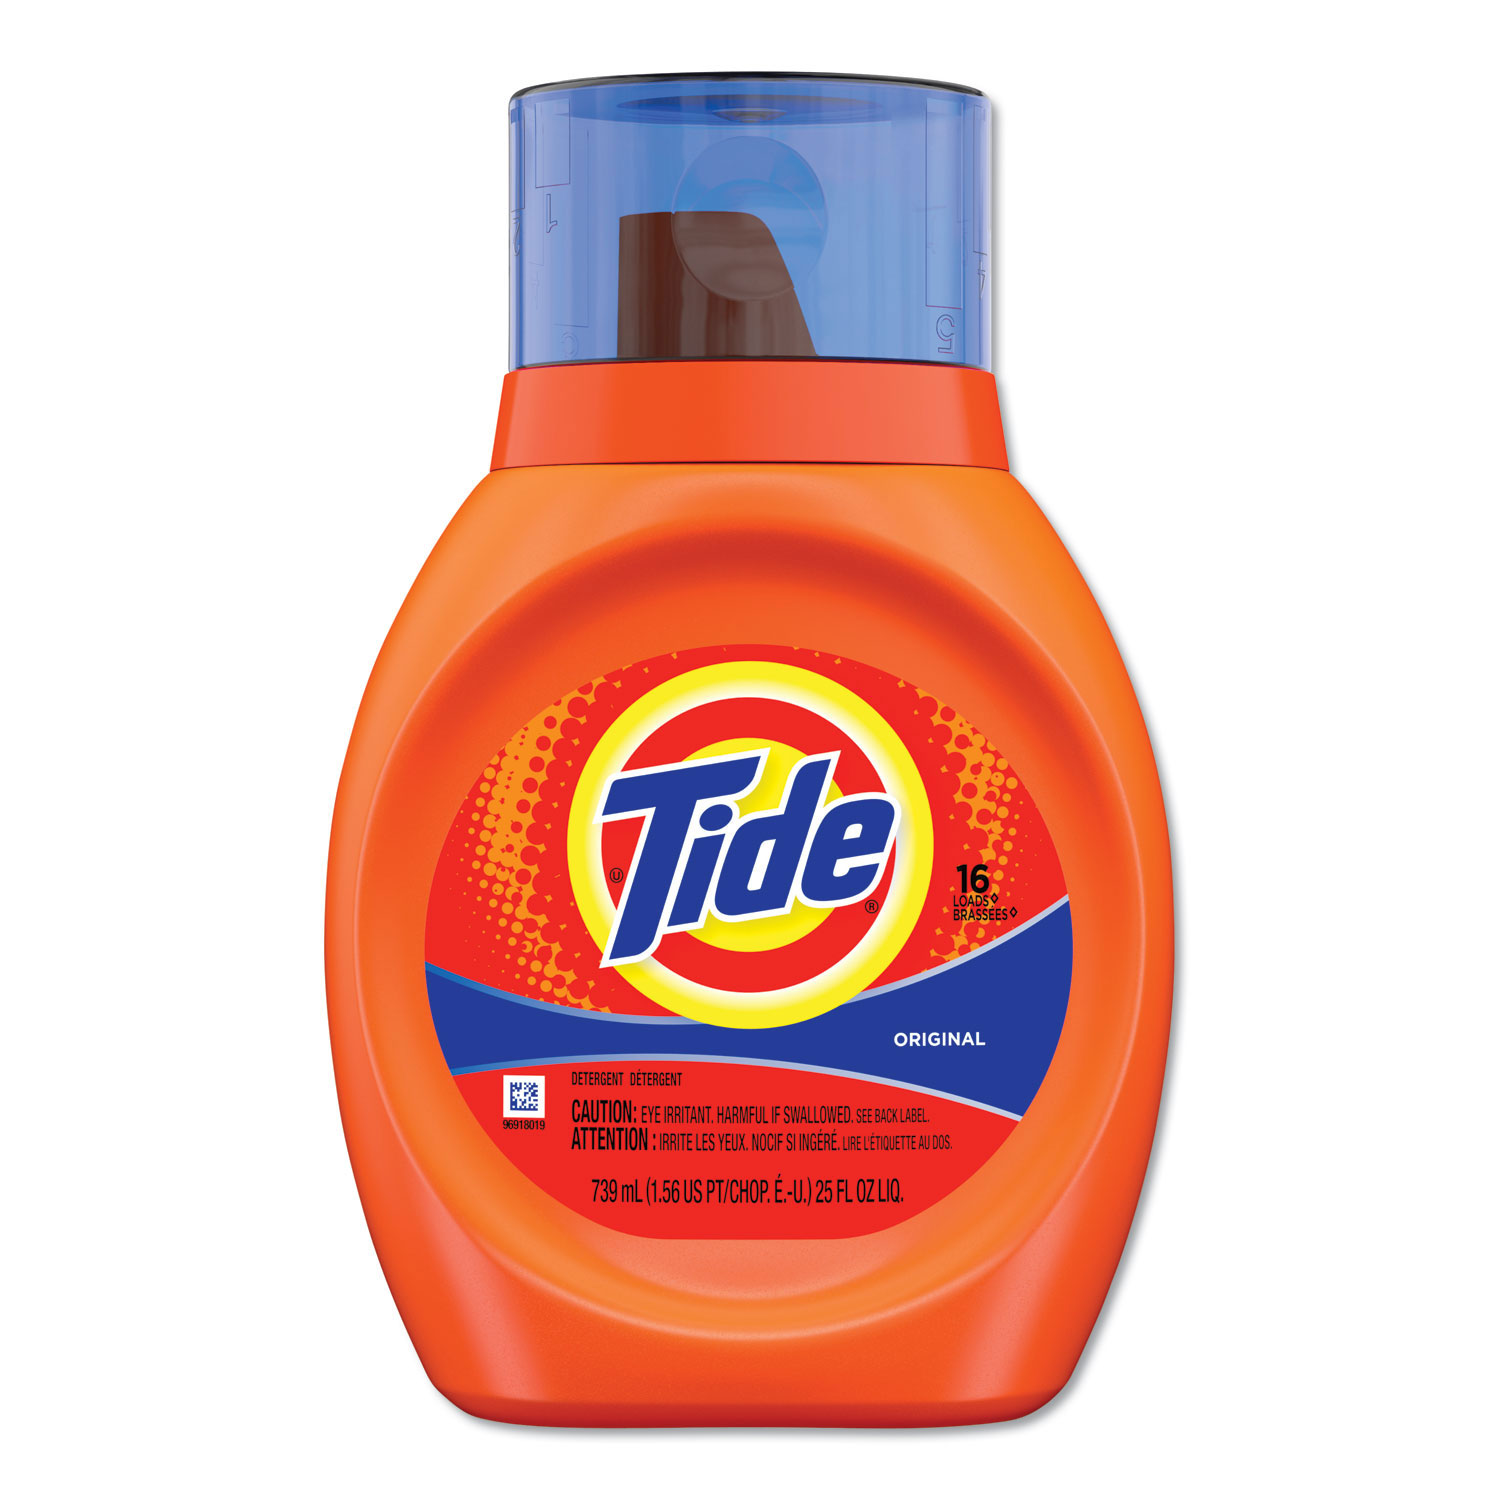 procter-gamble-tide-liquid-laundry-detergent-original-scent-25-oz-bottle-16-loads-6